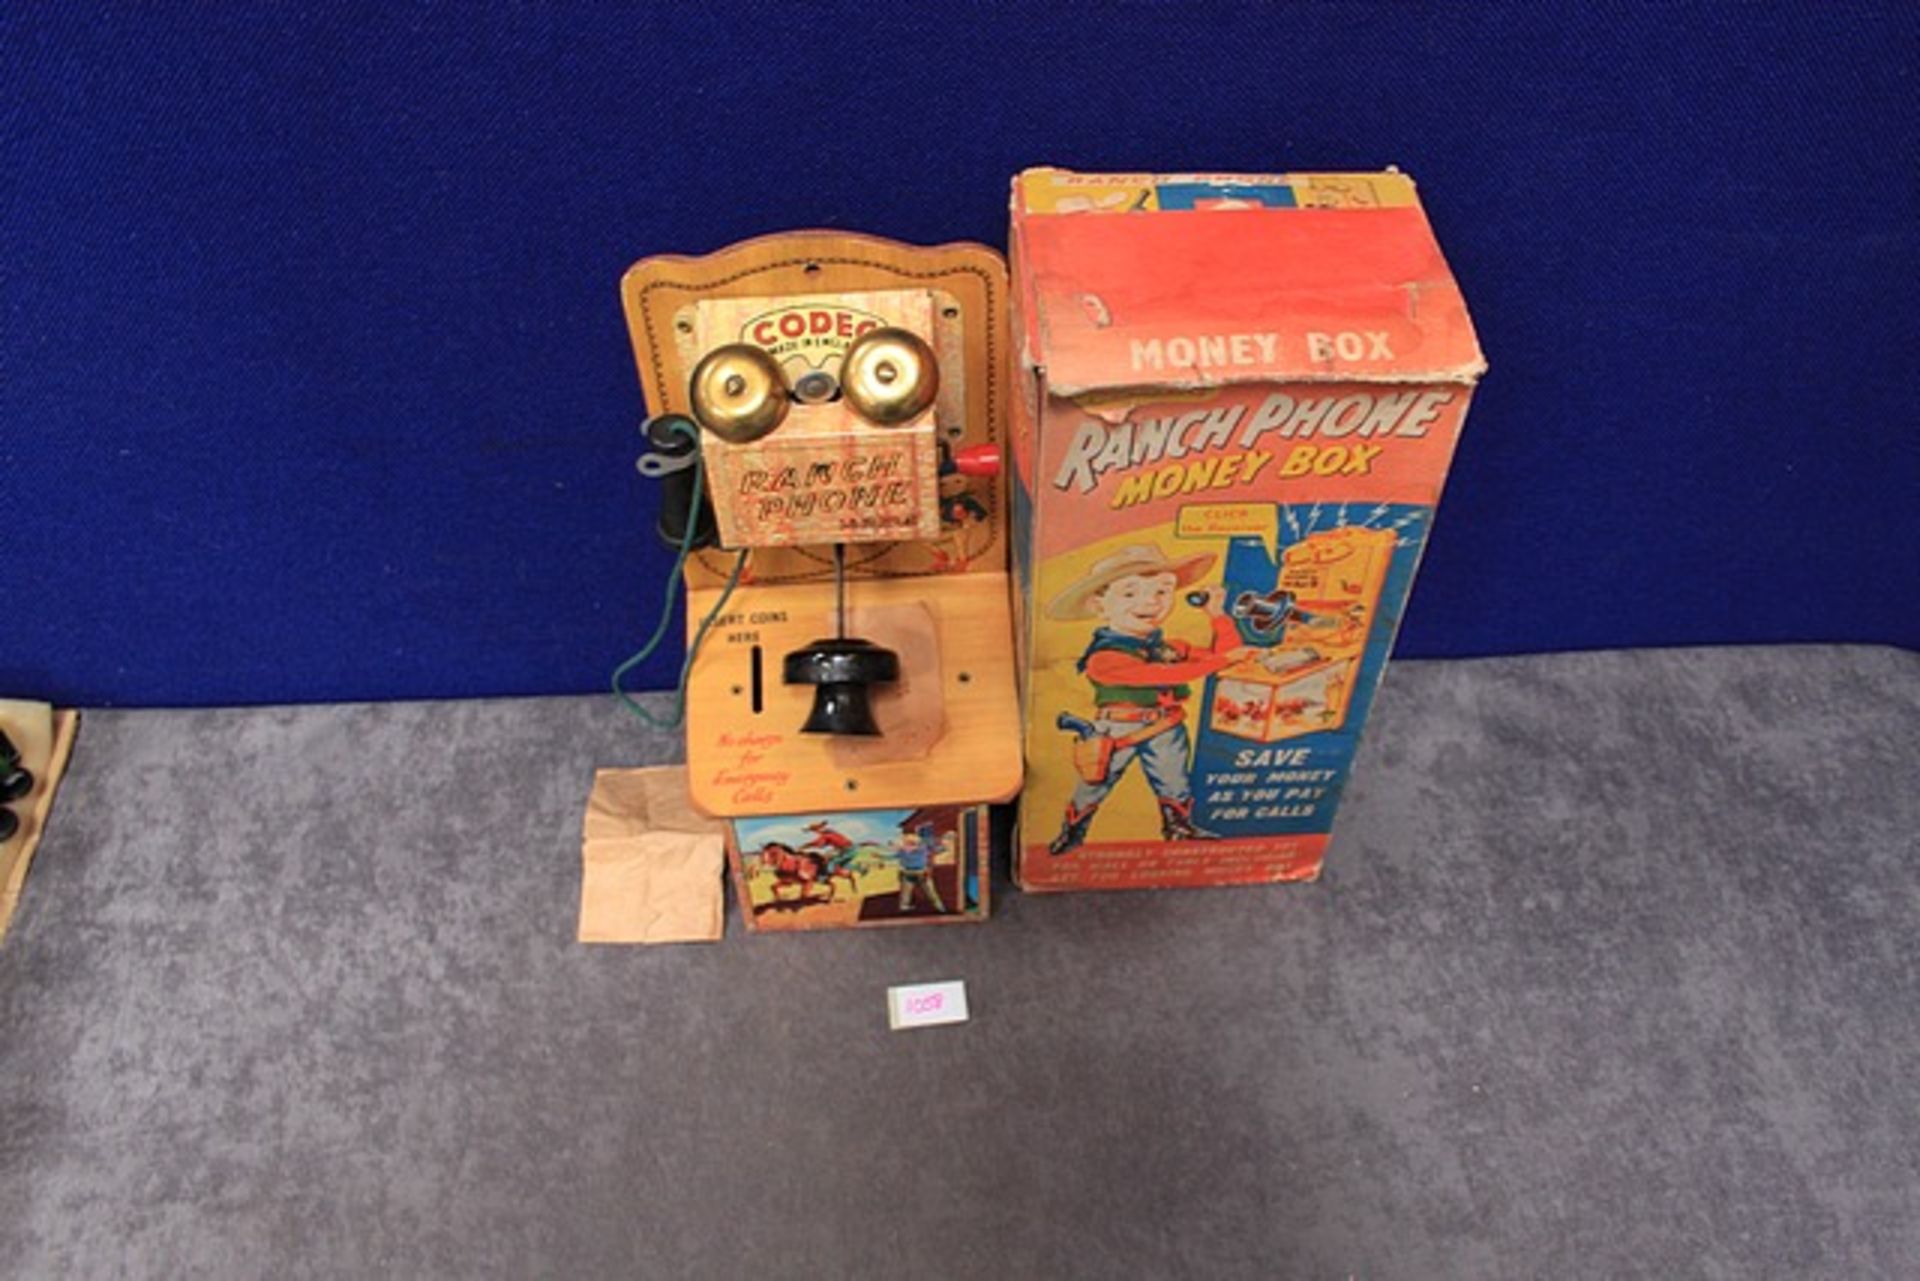 Quite Rare Codeg Ranch Phone Money Box in Box - Image 2 of 3